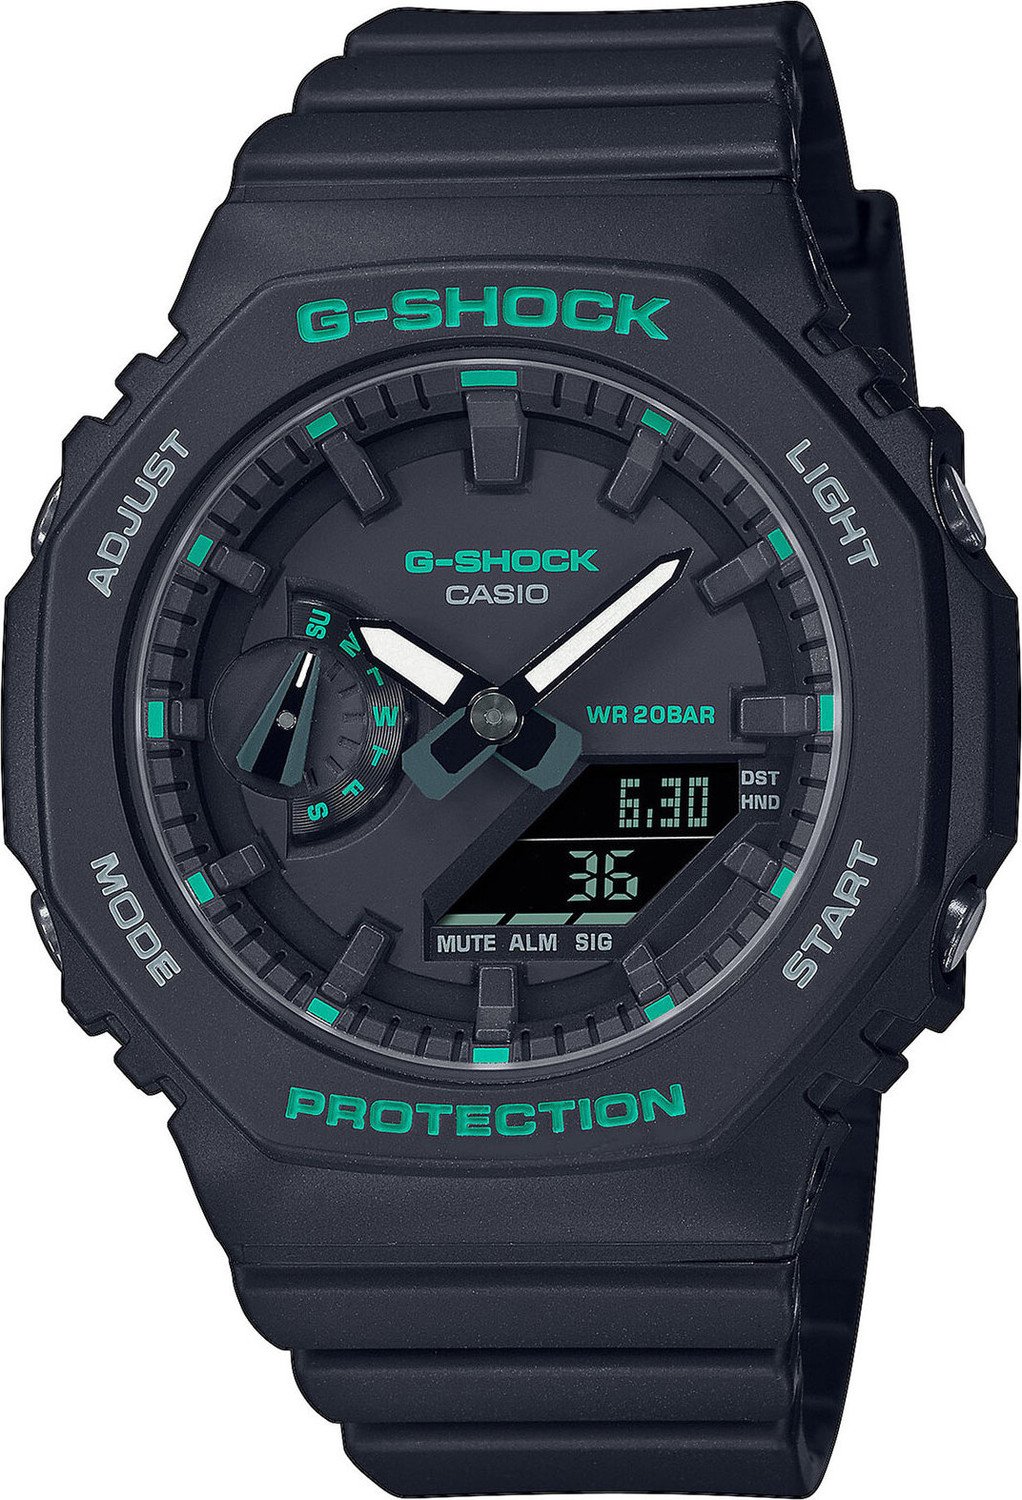 Hodinky G-Shock GMA-S2100GA -1AER Navy/Navy